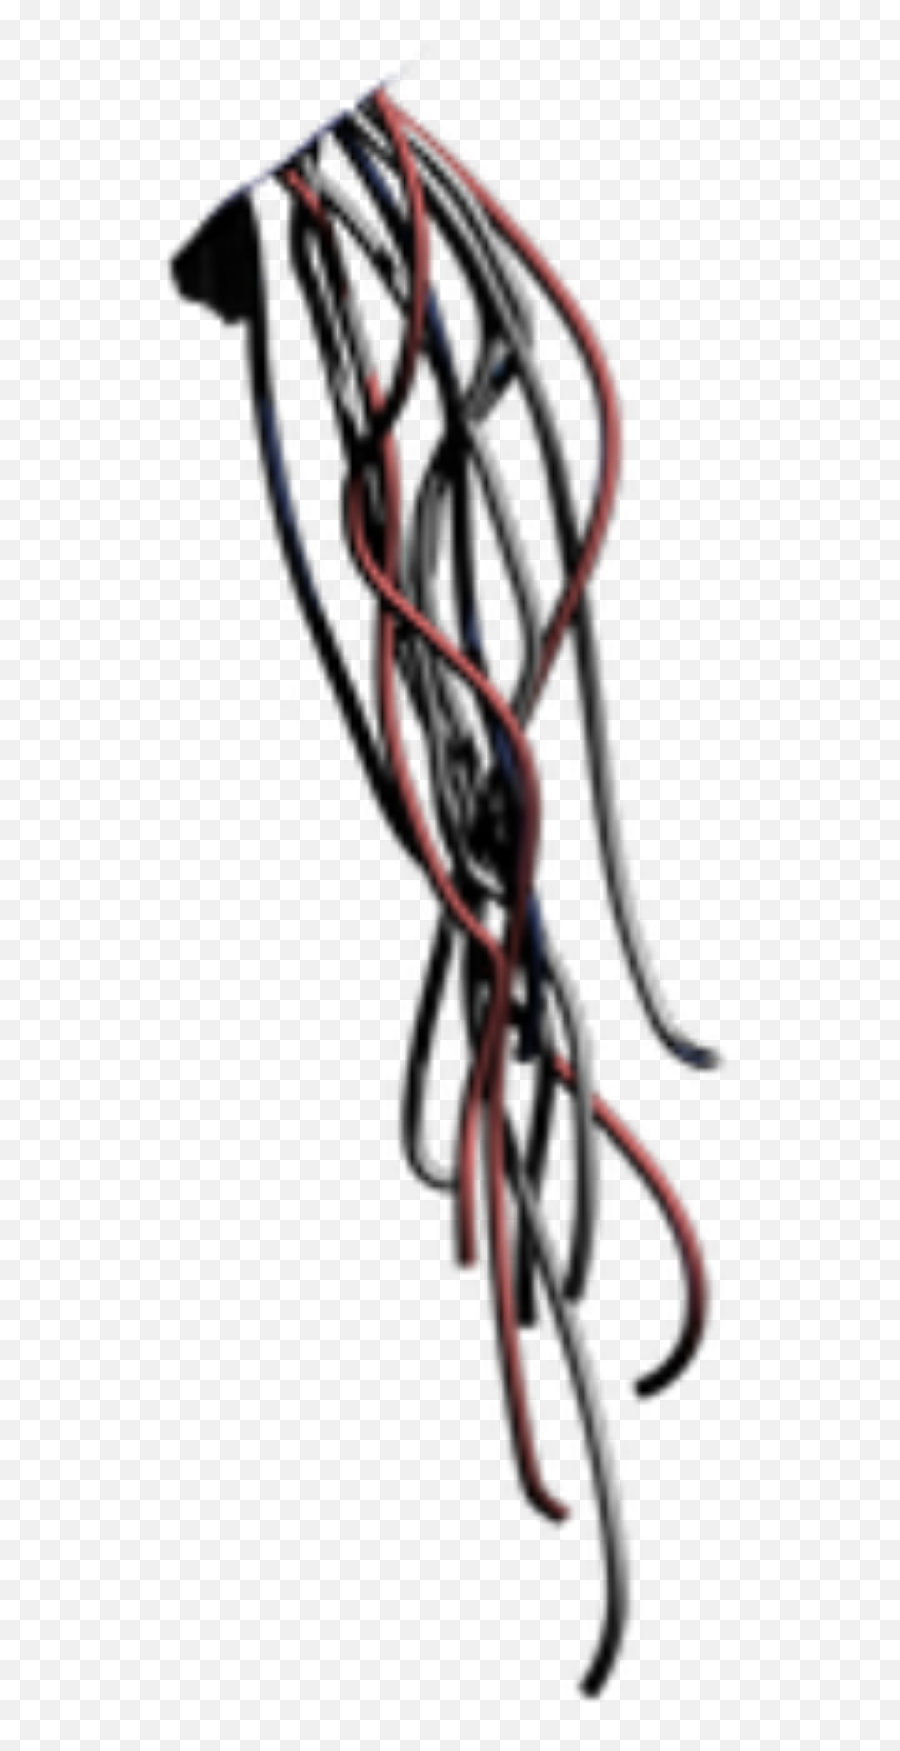 Fnaf Wires - Imagen De De Cables De Fnaf Png,Wires Png